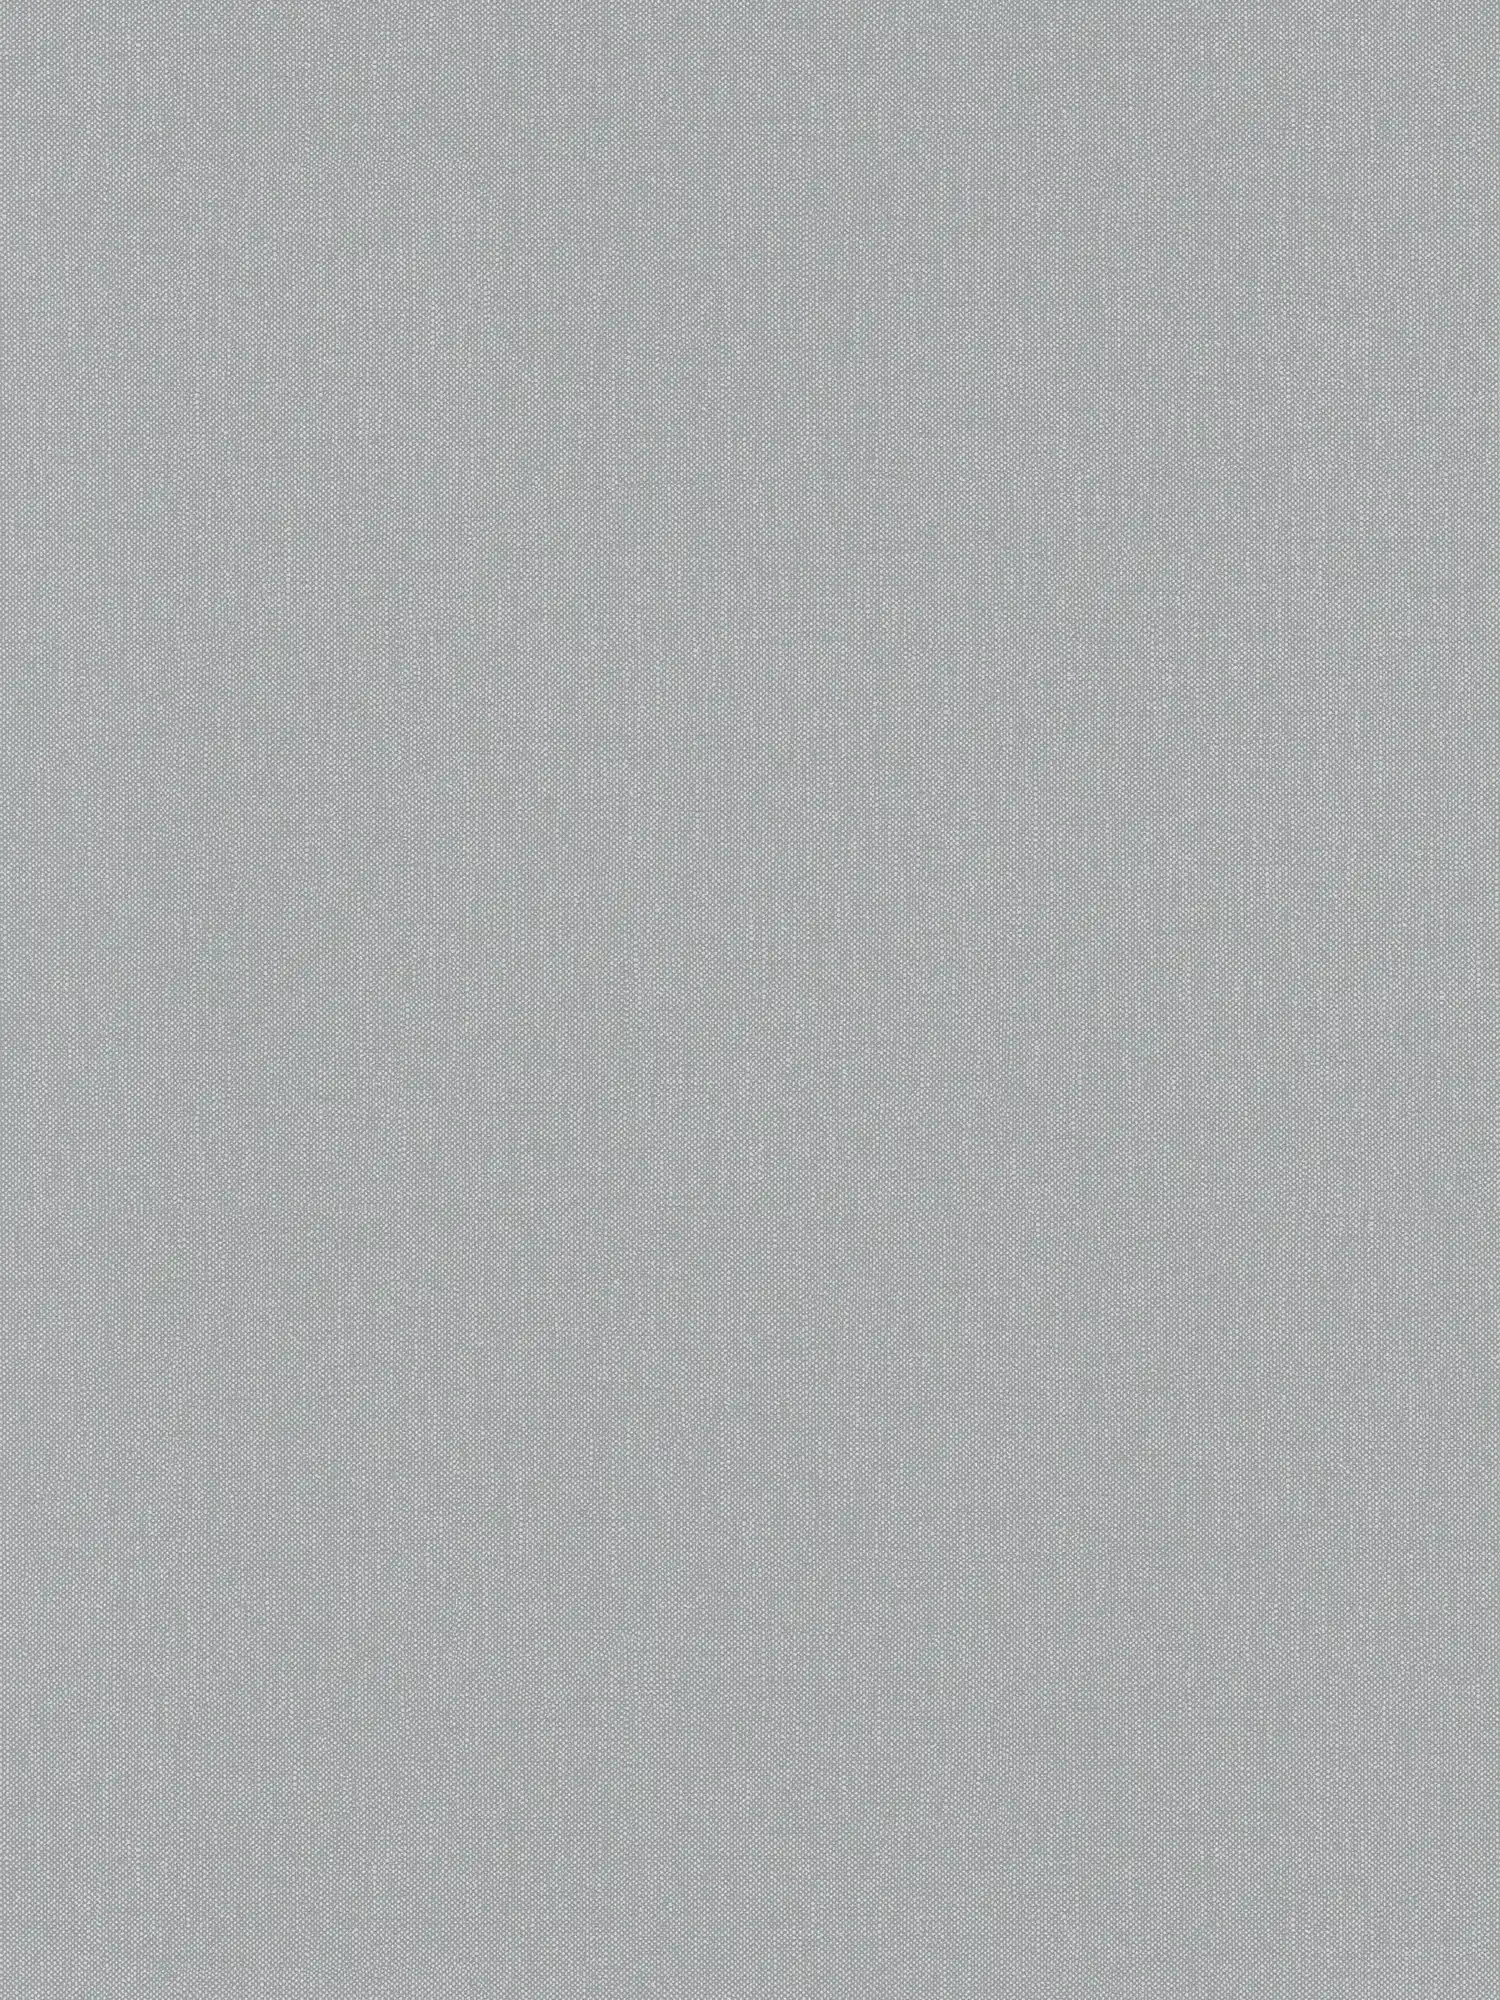 Papel pintado de lino gris con diseño de estructura en estilo rústico
